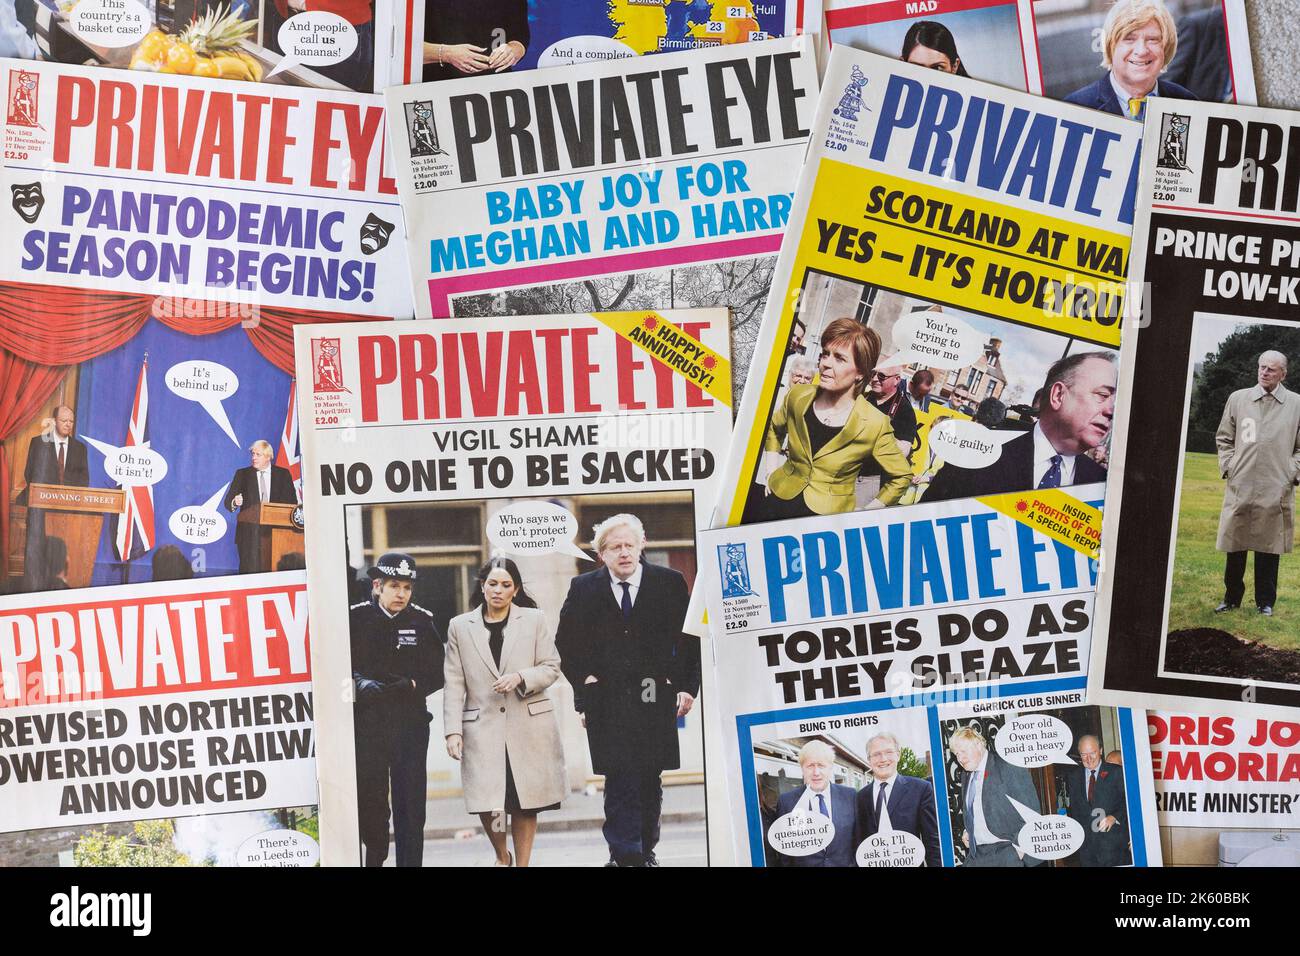 Raccolta di notizie e notizie di Private Eye e copertine della rivista Current Affairs che mostrano 2021 titoli del Regno Unito sulla pandemia di Covid-19 e sul partito conservatore Foto Stock